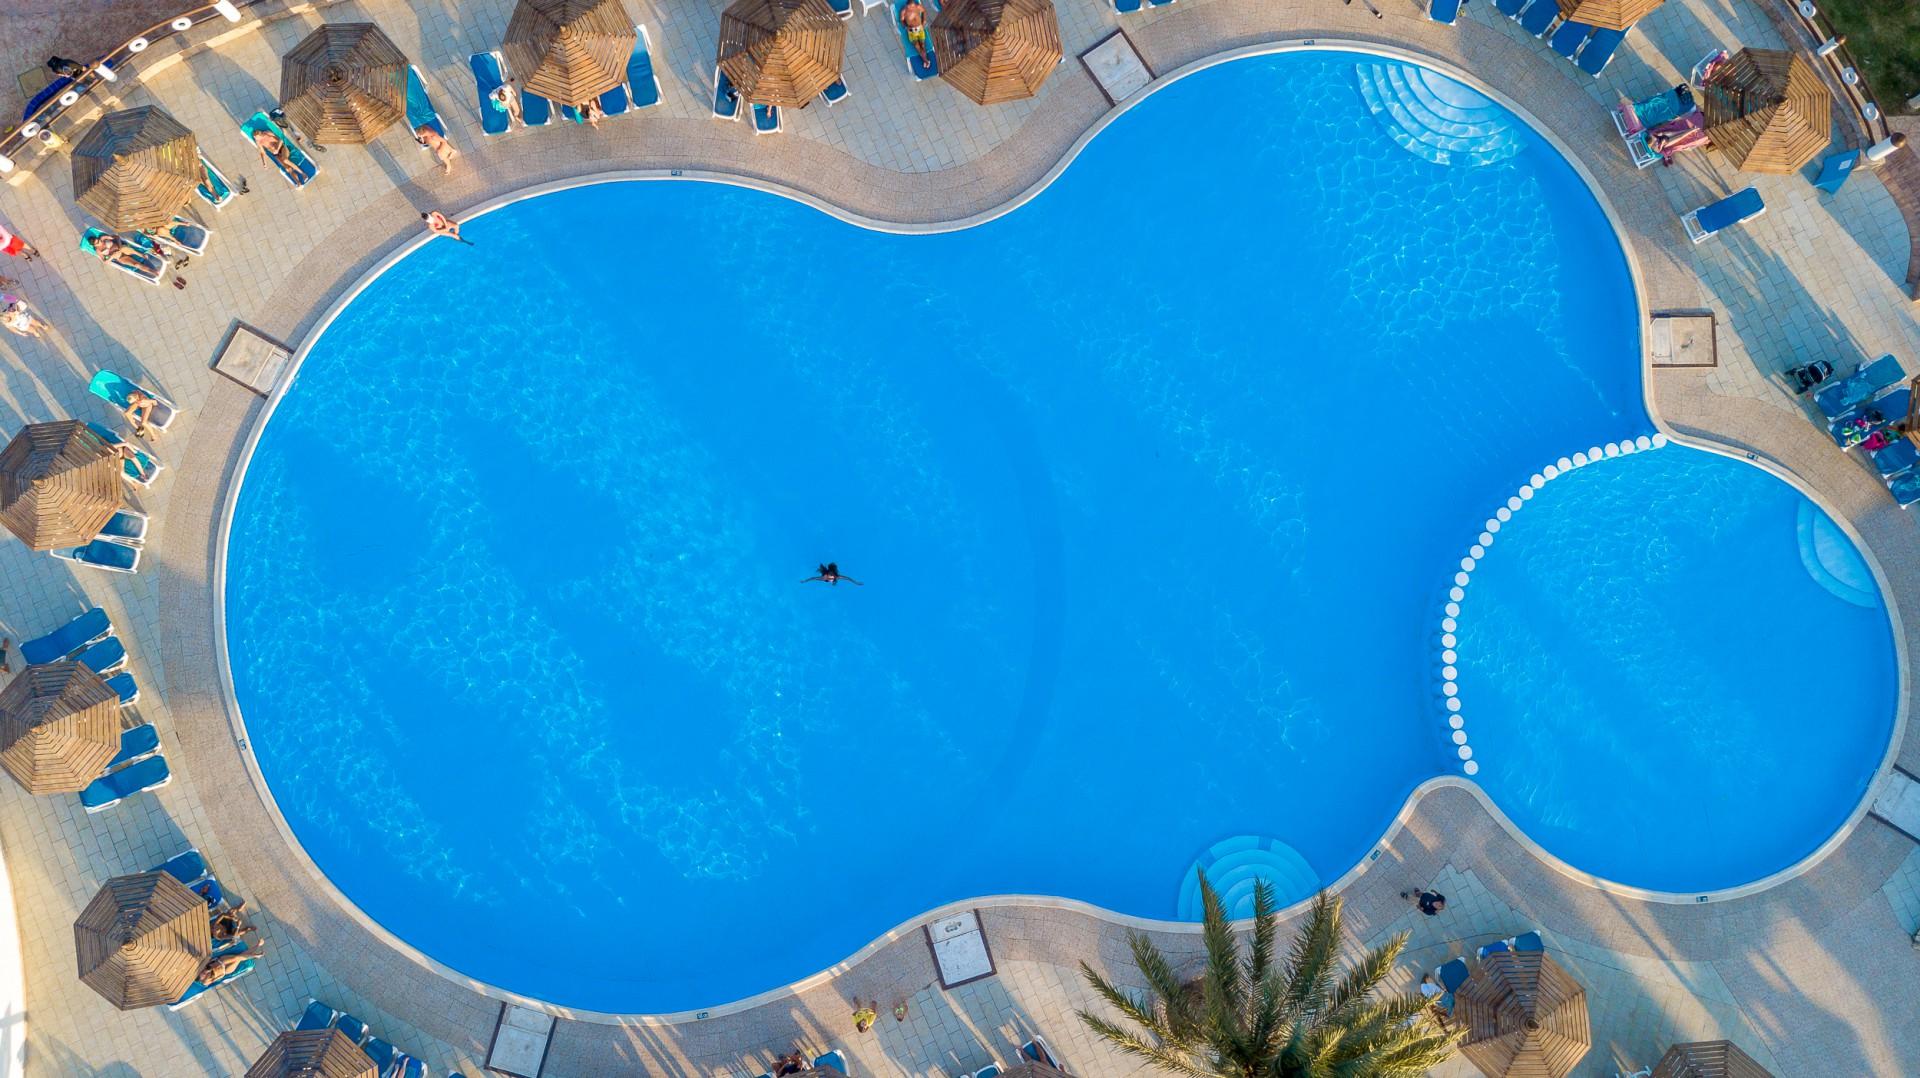 ارخص شركة لحجز فندق علاء الدين بيتش ريزورت الغردقة - بالانتقالات 2022 | Aladdin Beach Resort